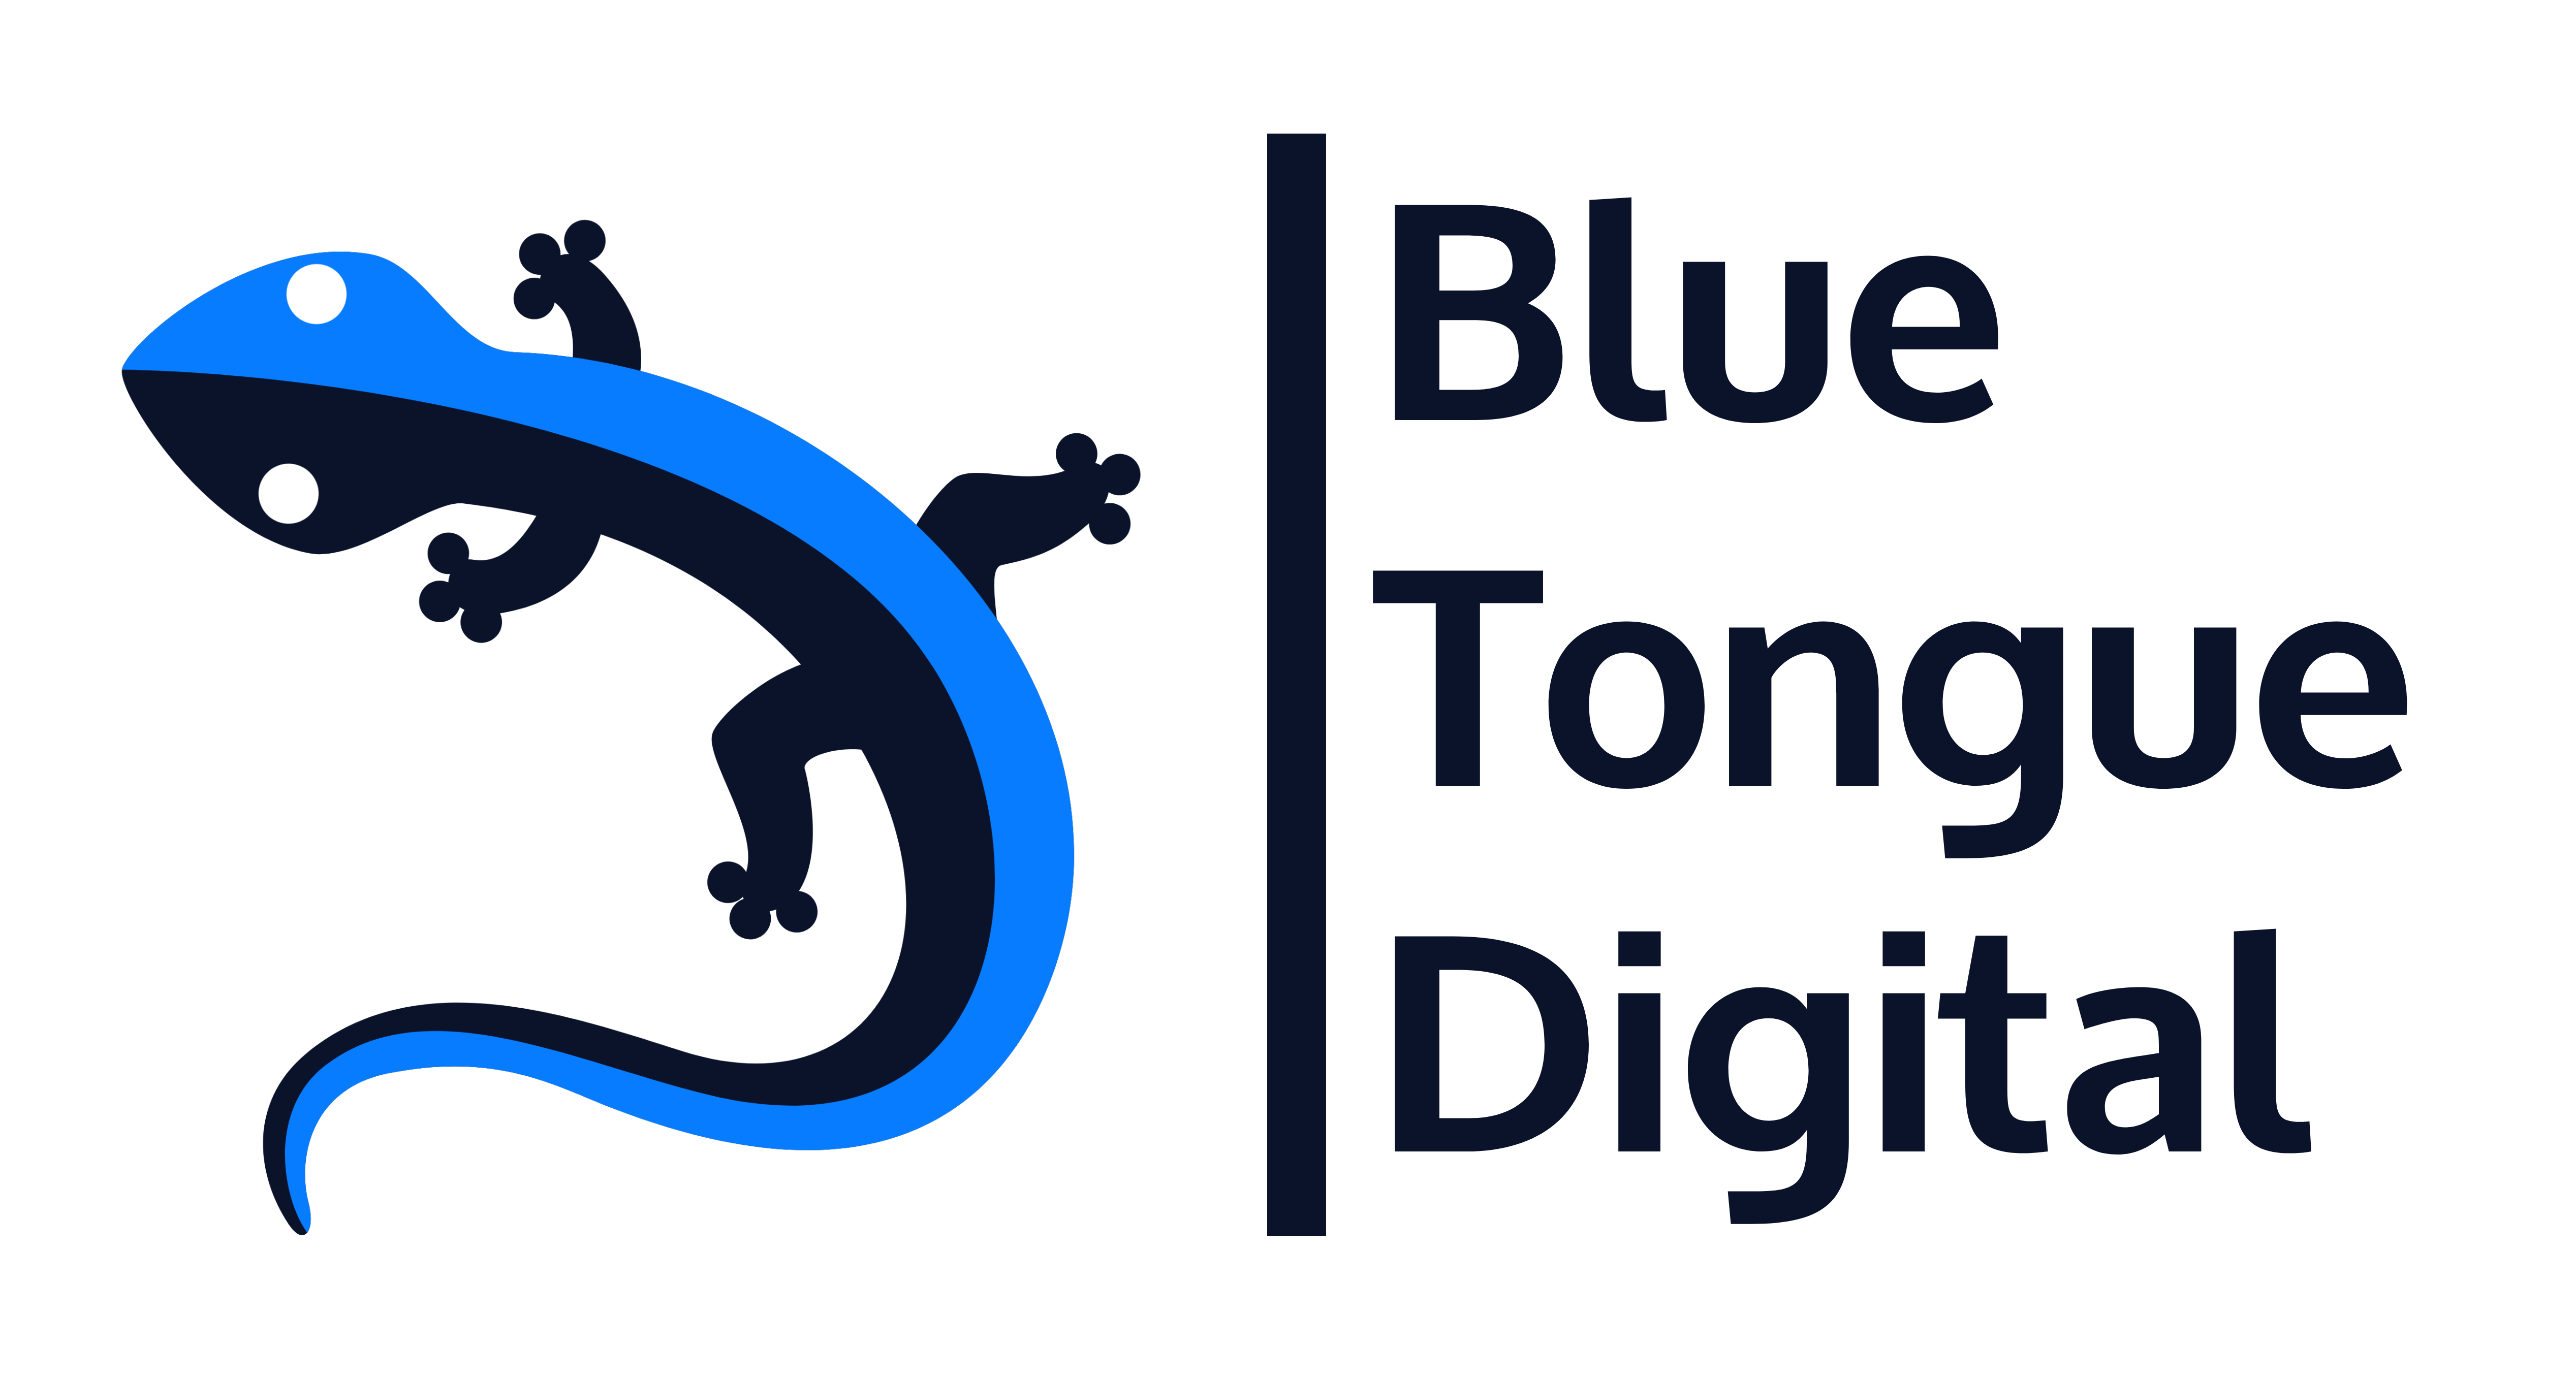 BTD logo full